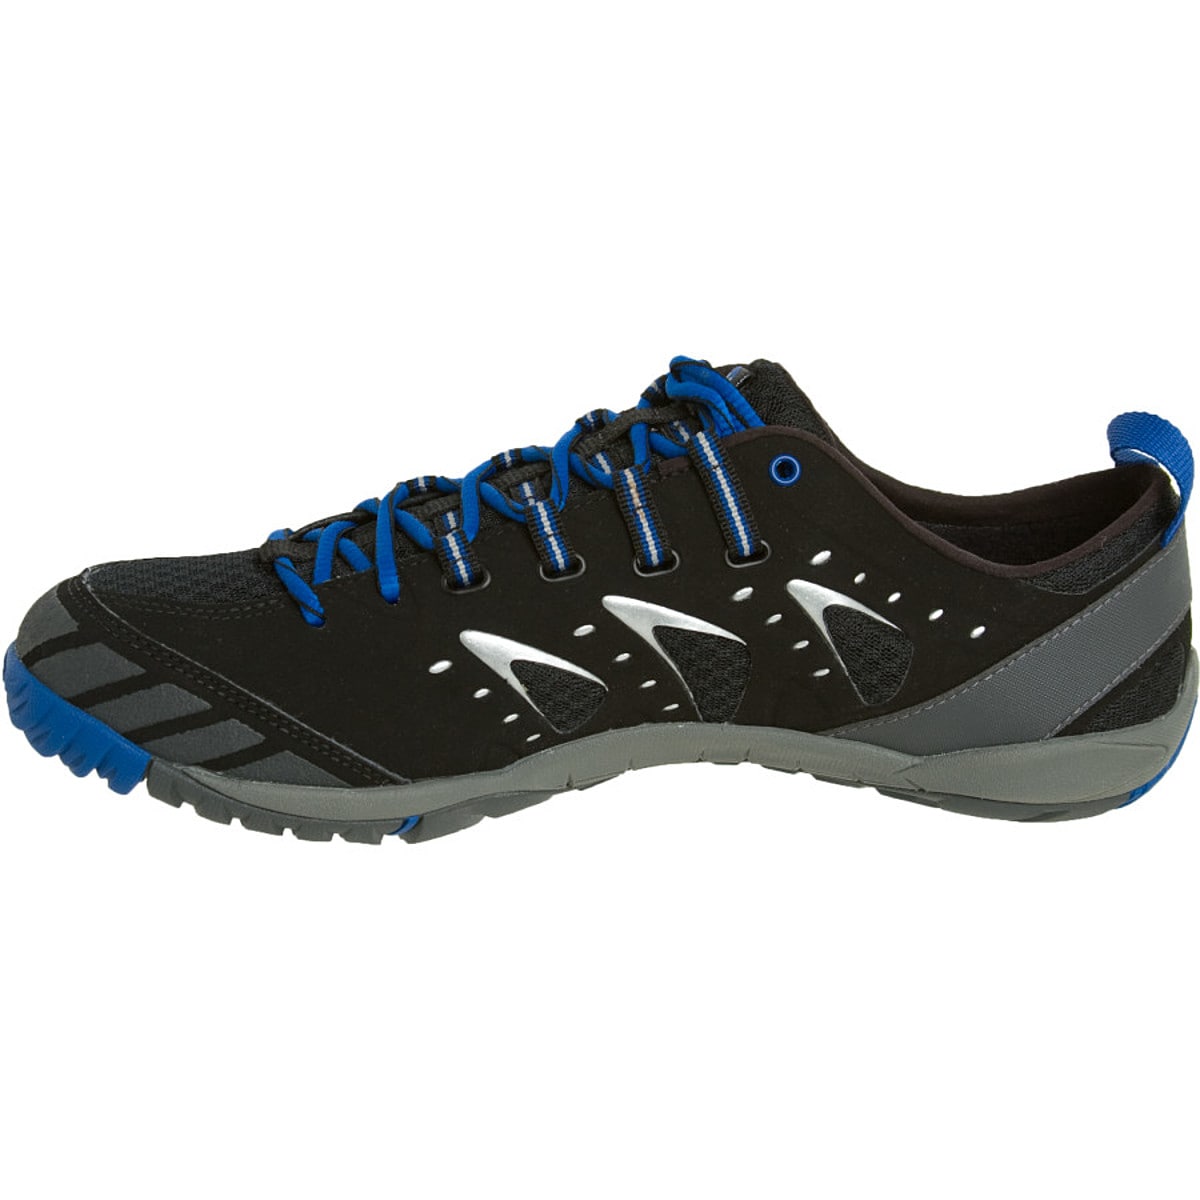 Embark Glove GTX Trail Running Shoes Men's - Footwear